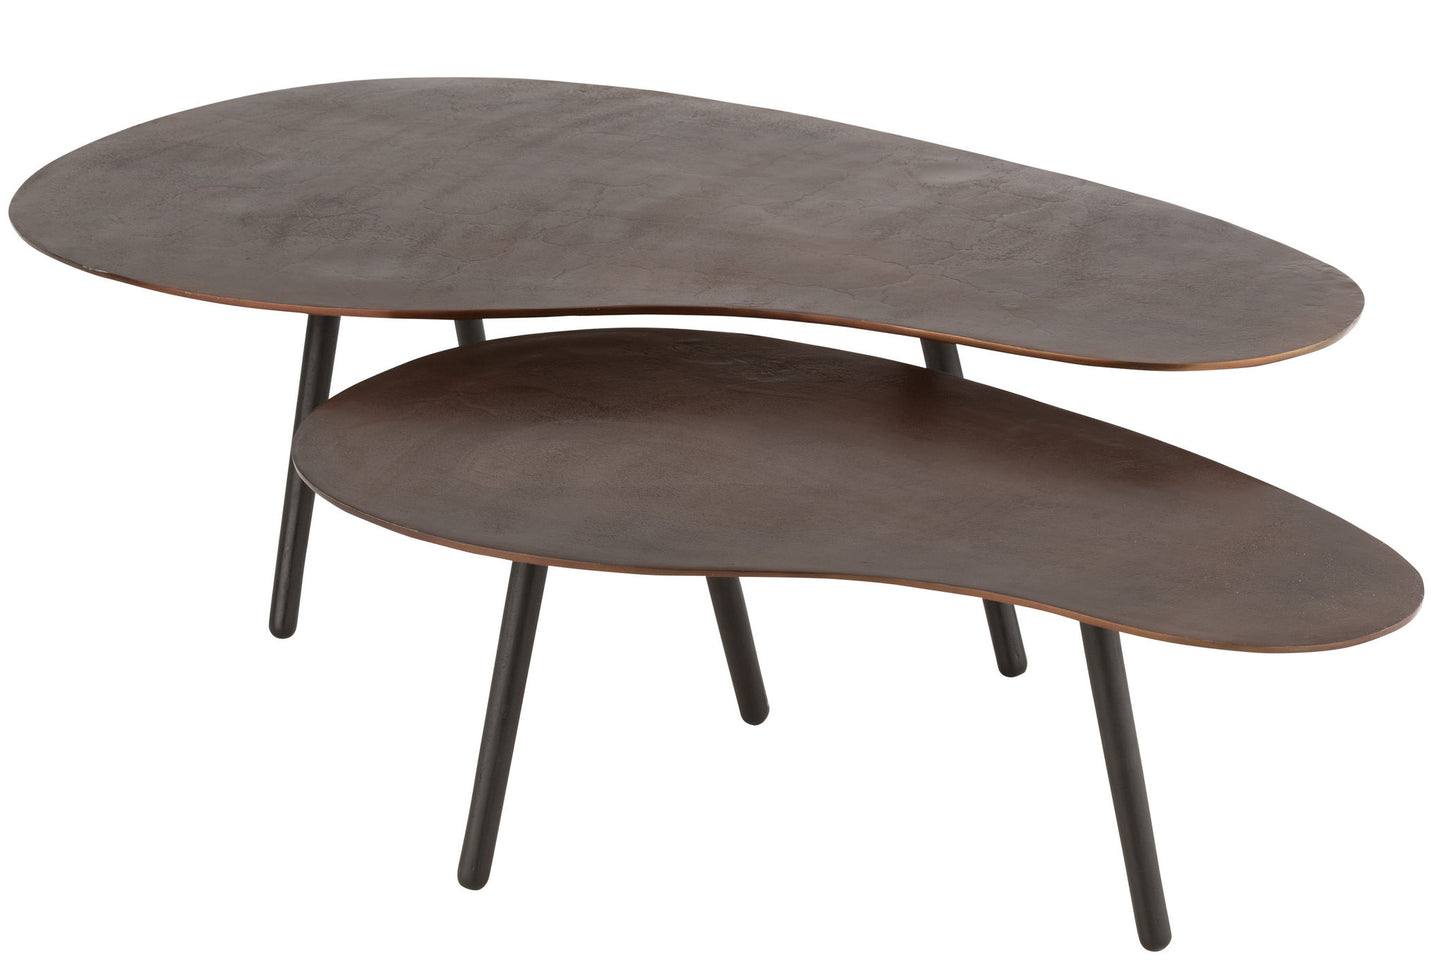 Soffbordsdråb aluminium/jernbrun stor